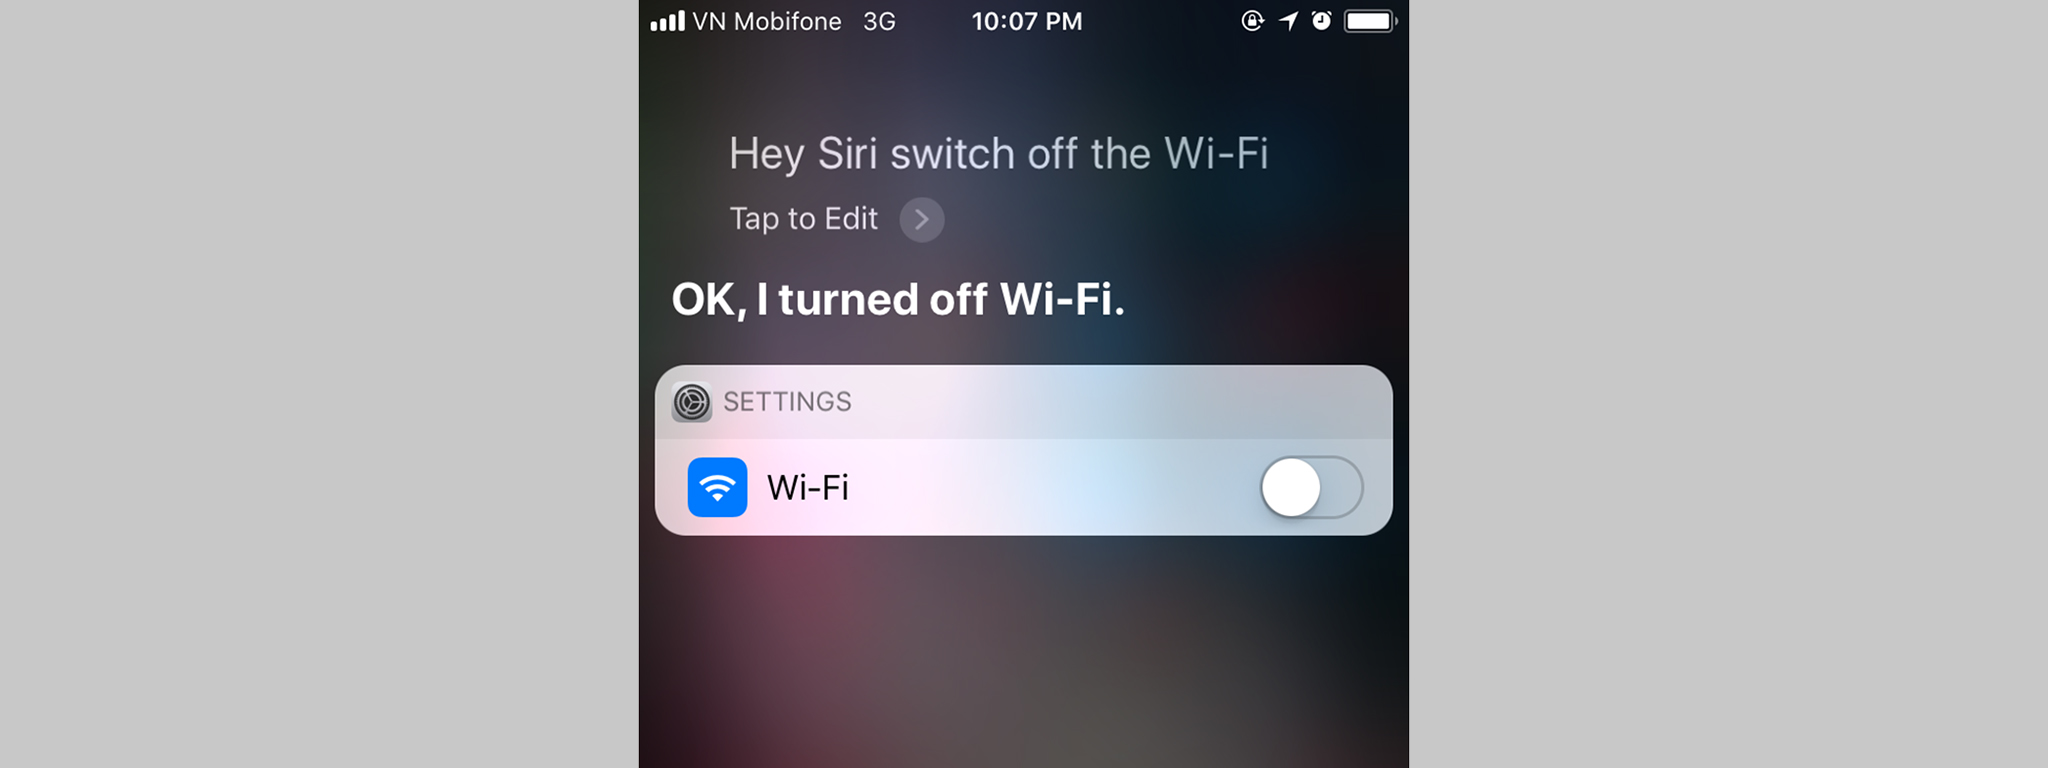 Anh em có thể nhờ Siri để tắt hẳn Bluetooth và Wi-Fi trên iOS 11 mà không cần vào Settings